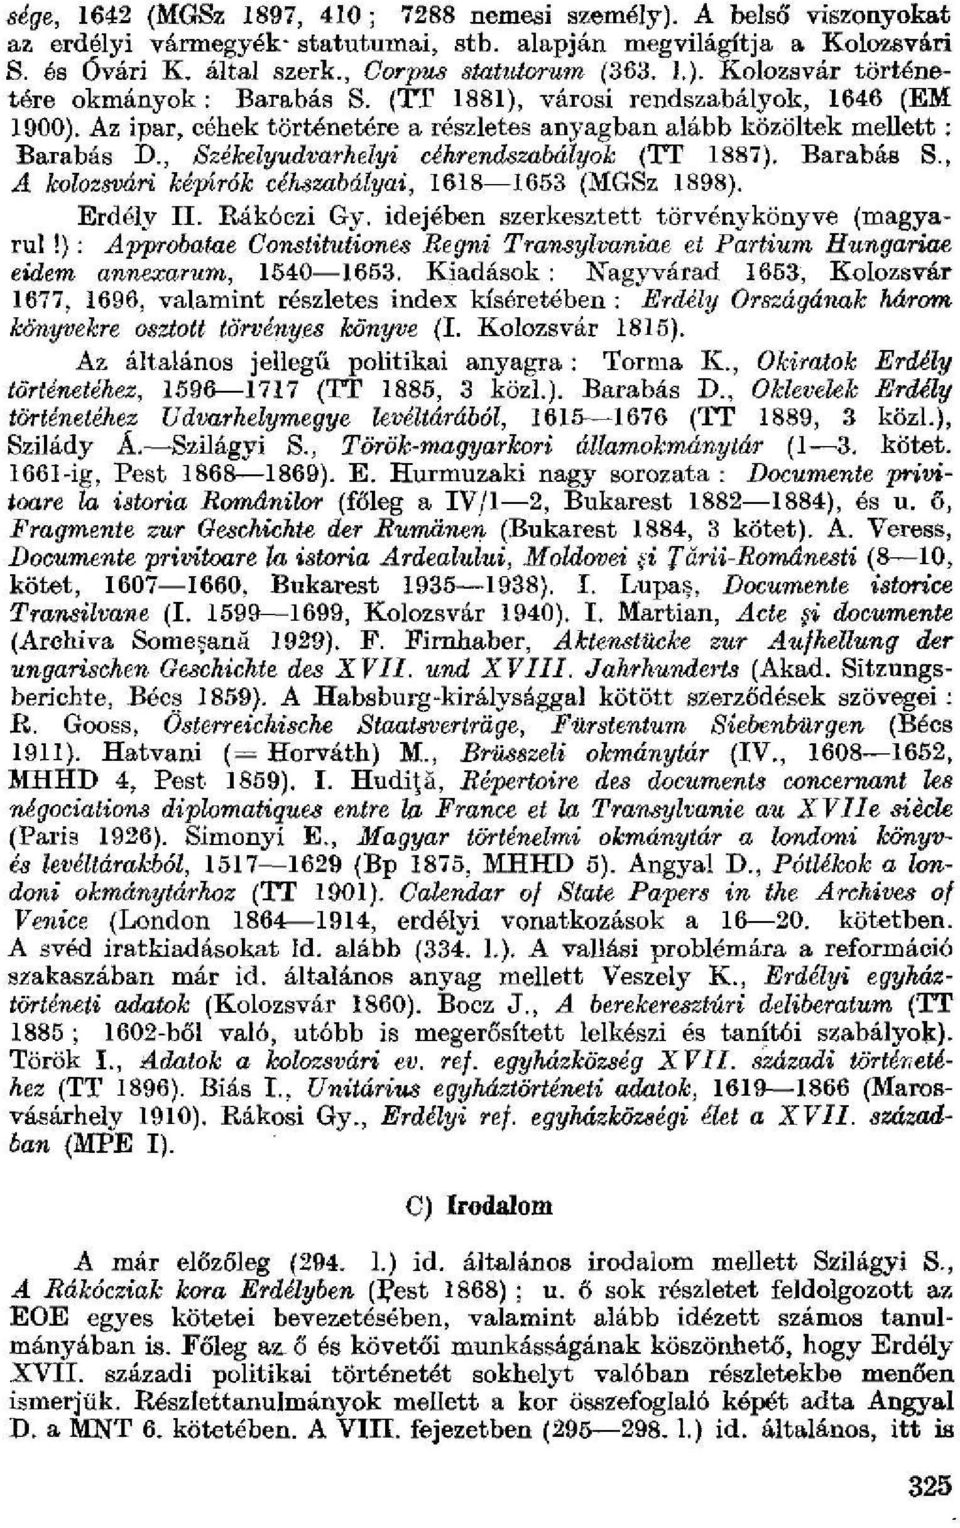 Az ipar, céhek történetére a részletes anyagban alább közöltek mellett : Barabás IX, Székelyudvarhelyi céhrendszabályok (TT 1887). Barabás S., A kolozsvári képírók céhszabályai, 1618 1653 {MGSz 1898).